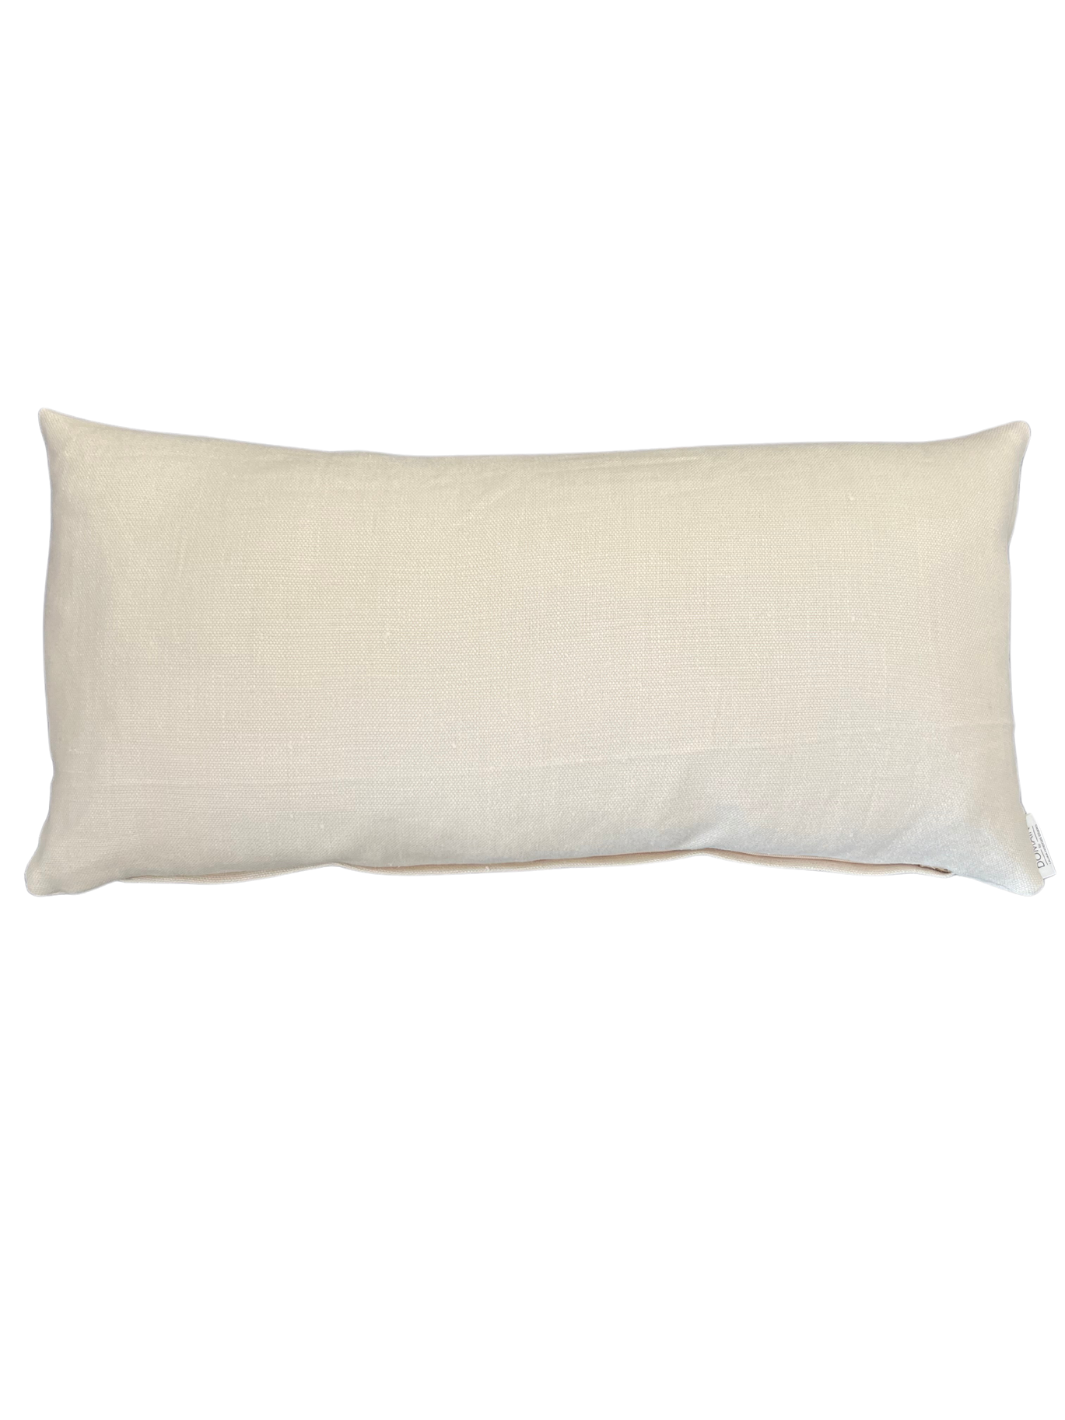 Thick Ivory Linen Lumbar Pillow